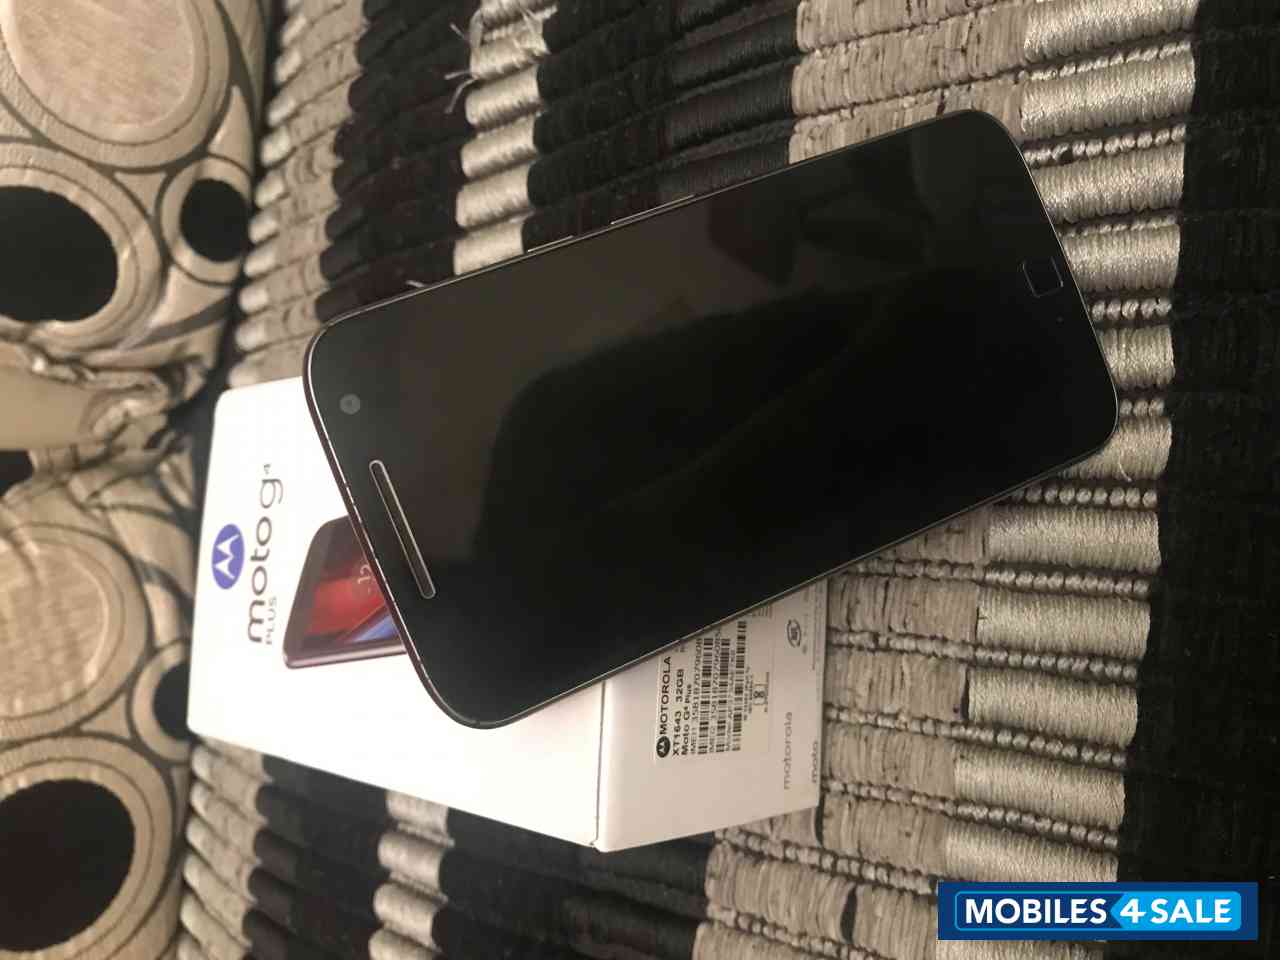 Black Motorola Moto G4 Plus